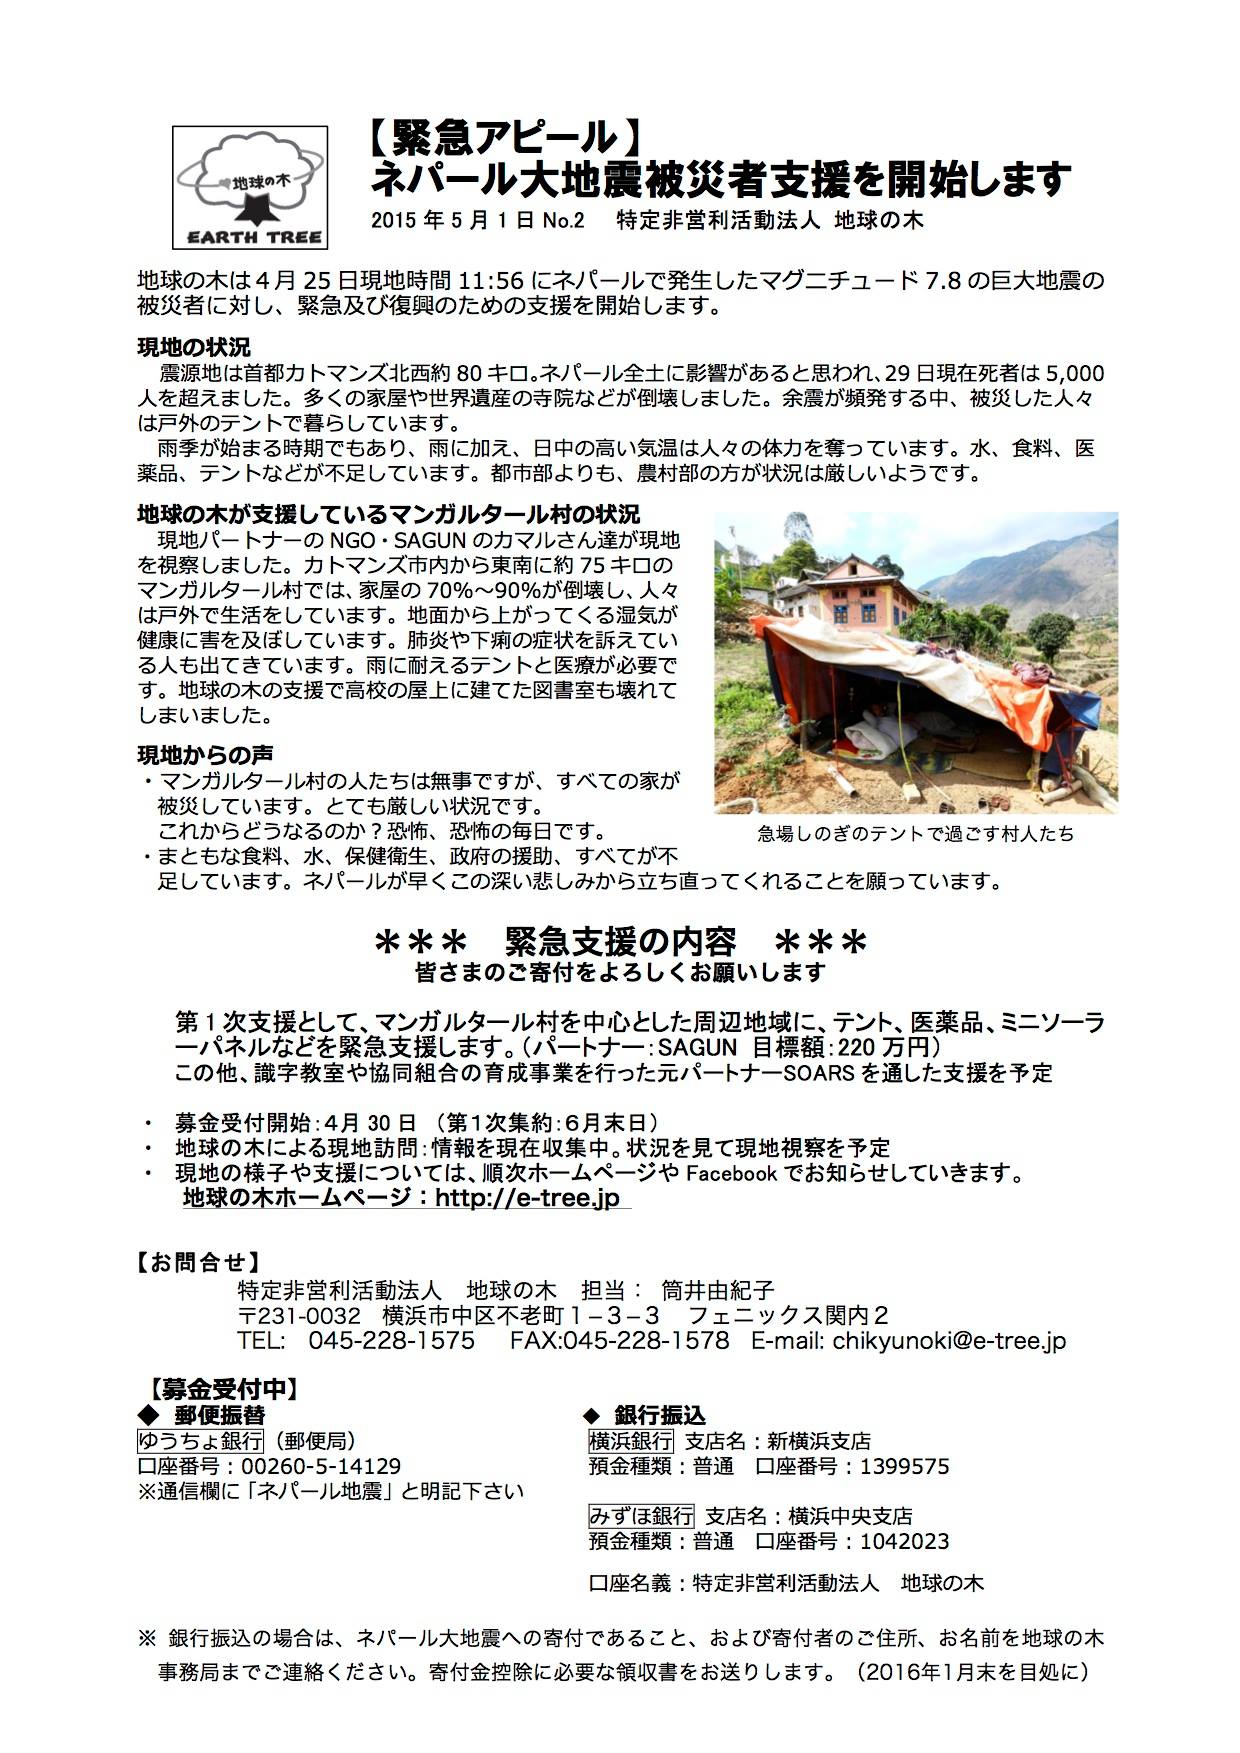 ネパール大地震緊急救援募金 青木マキ